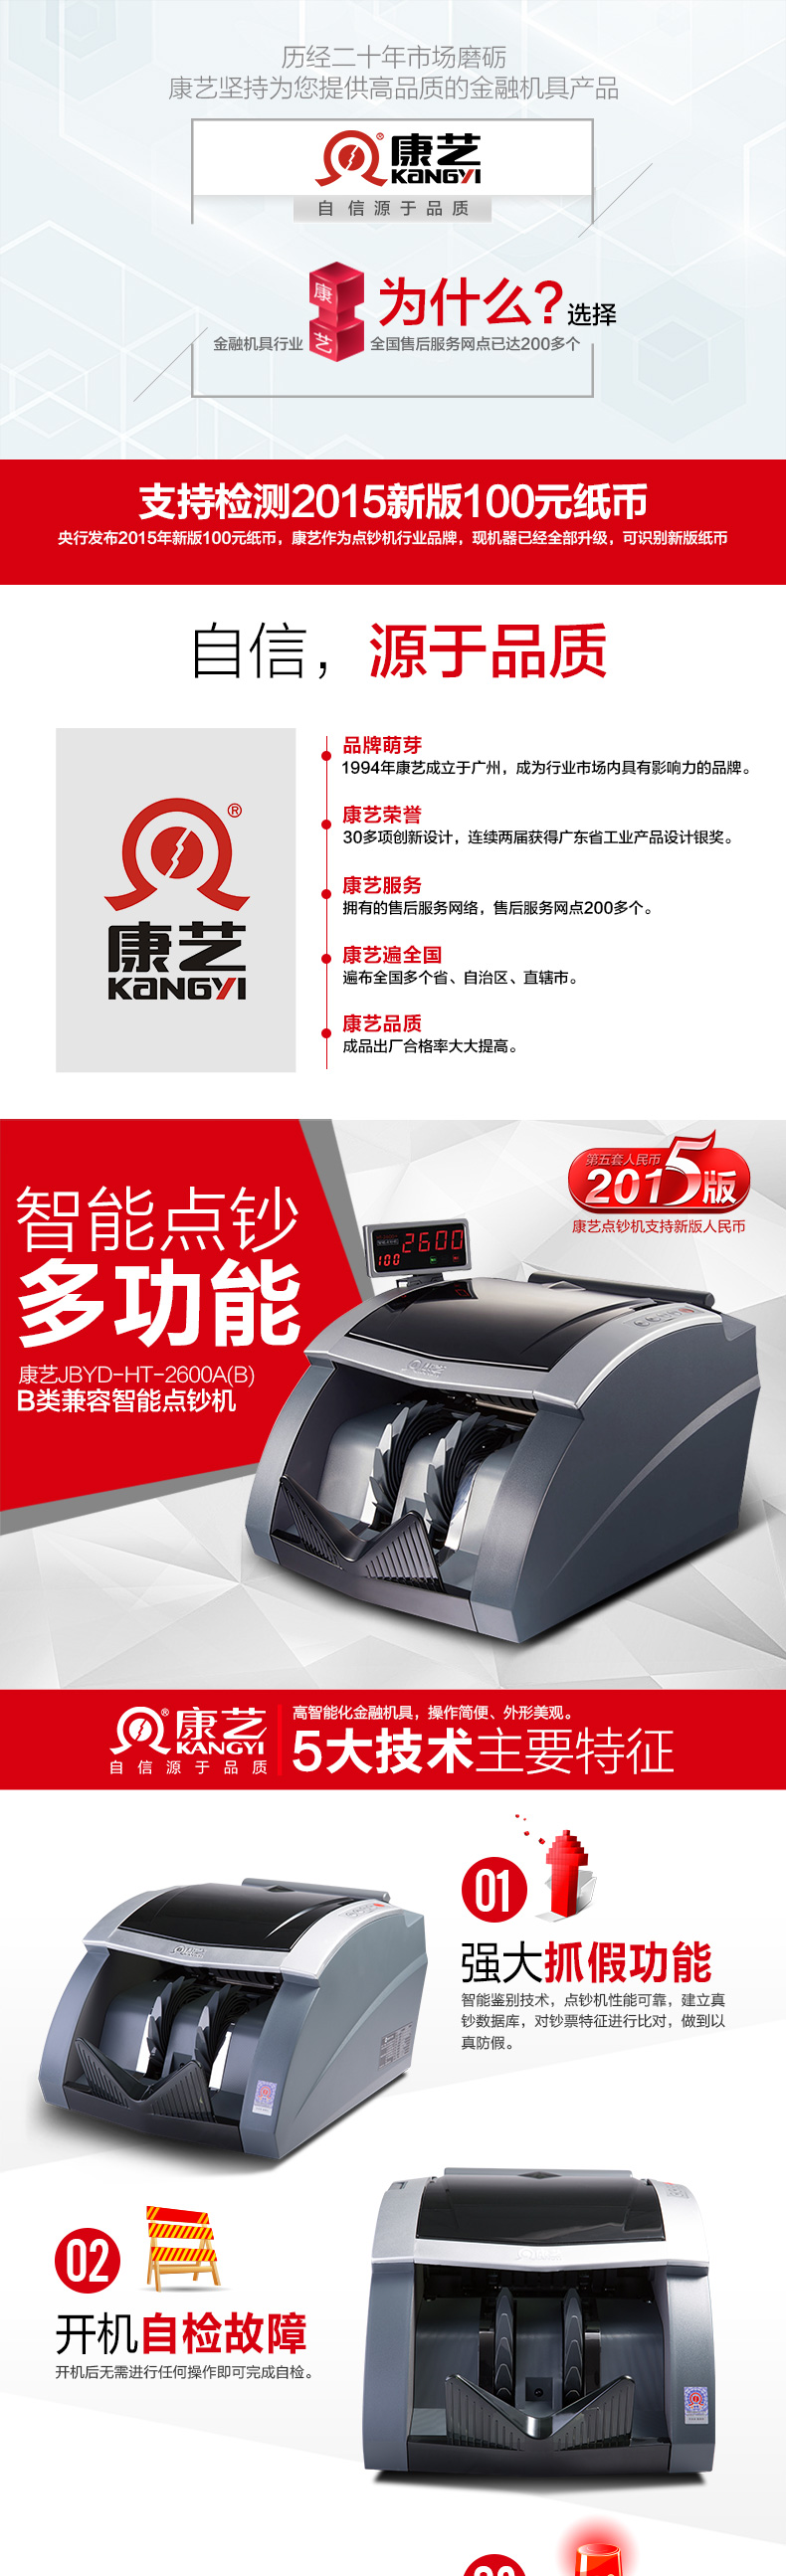 康艺(KANGYI)JBYD-HT-2600A 银行专用 点/ 验钞机 支持新版人民币